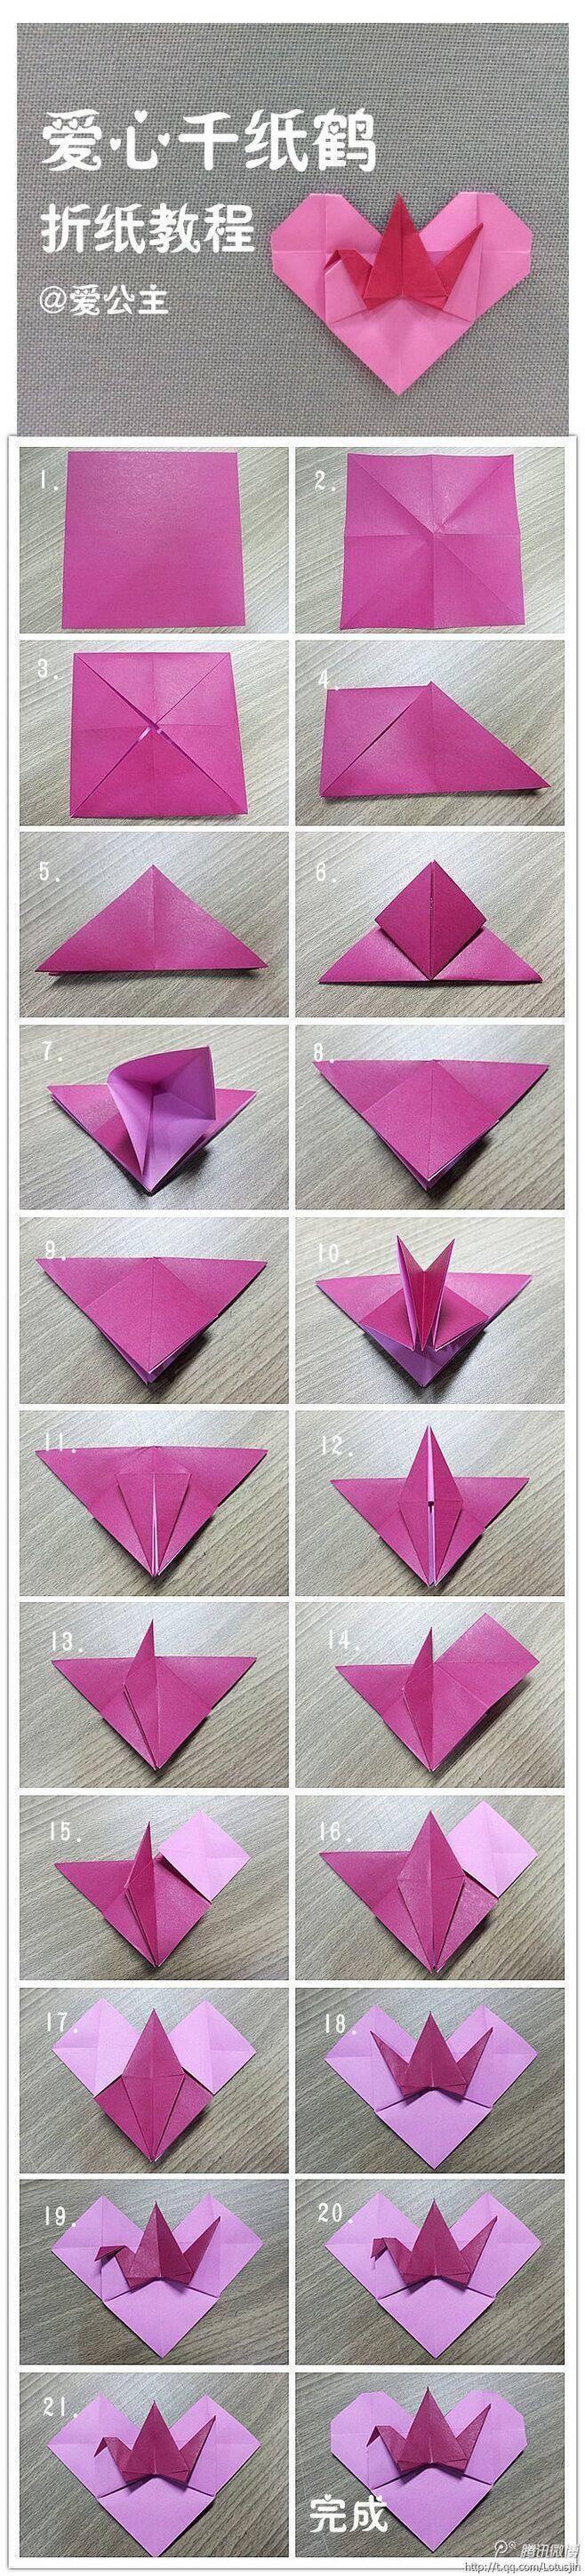 怎样折千纸鹤?慢动作图片